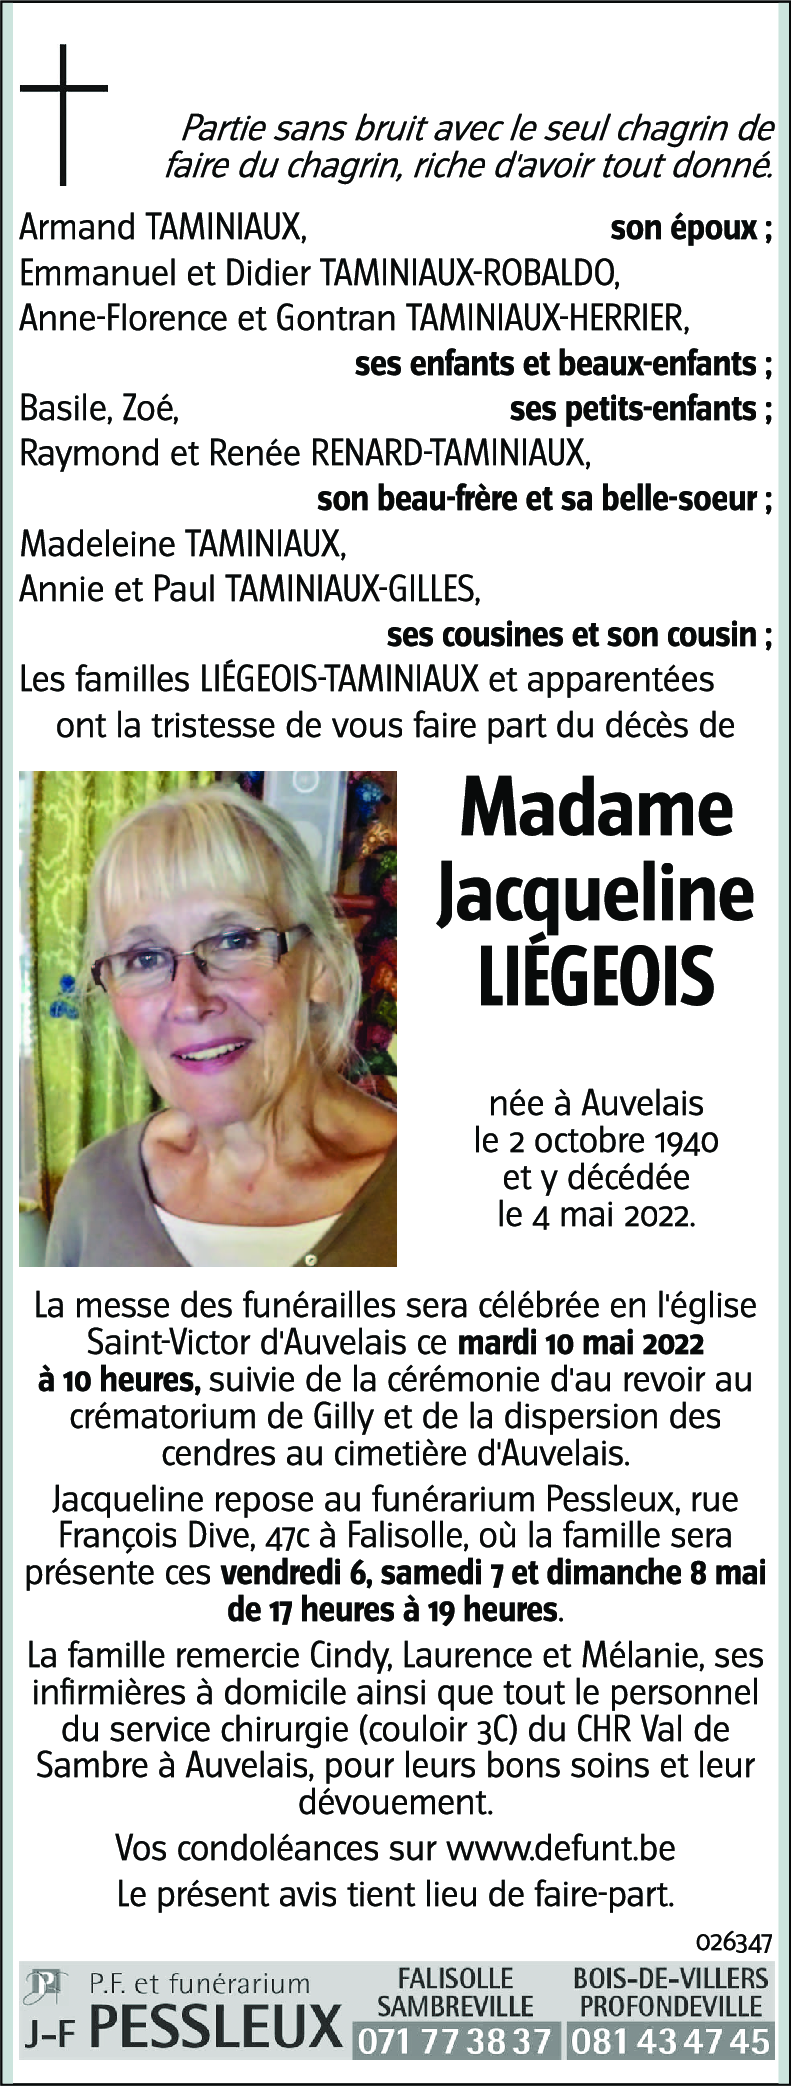 Jacqueline LIÉGEOIS